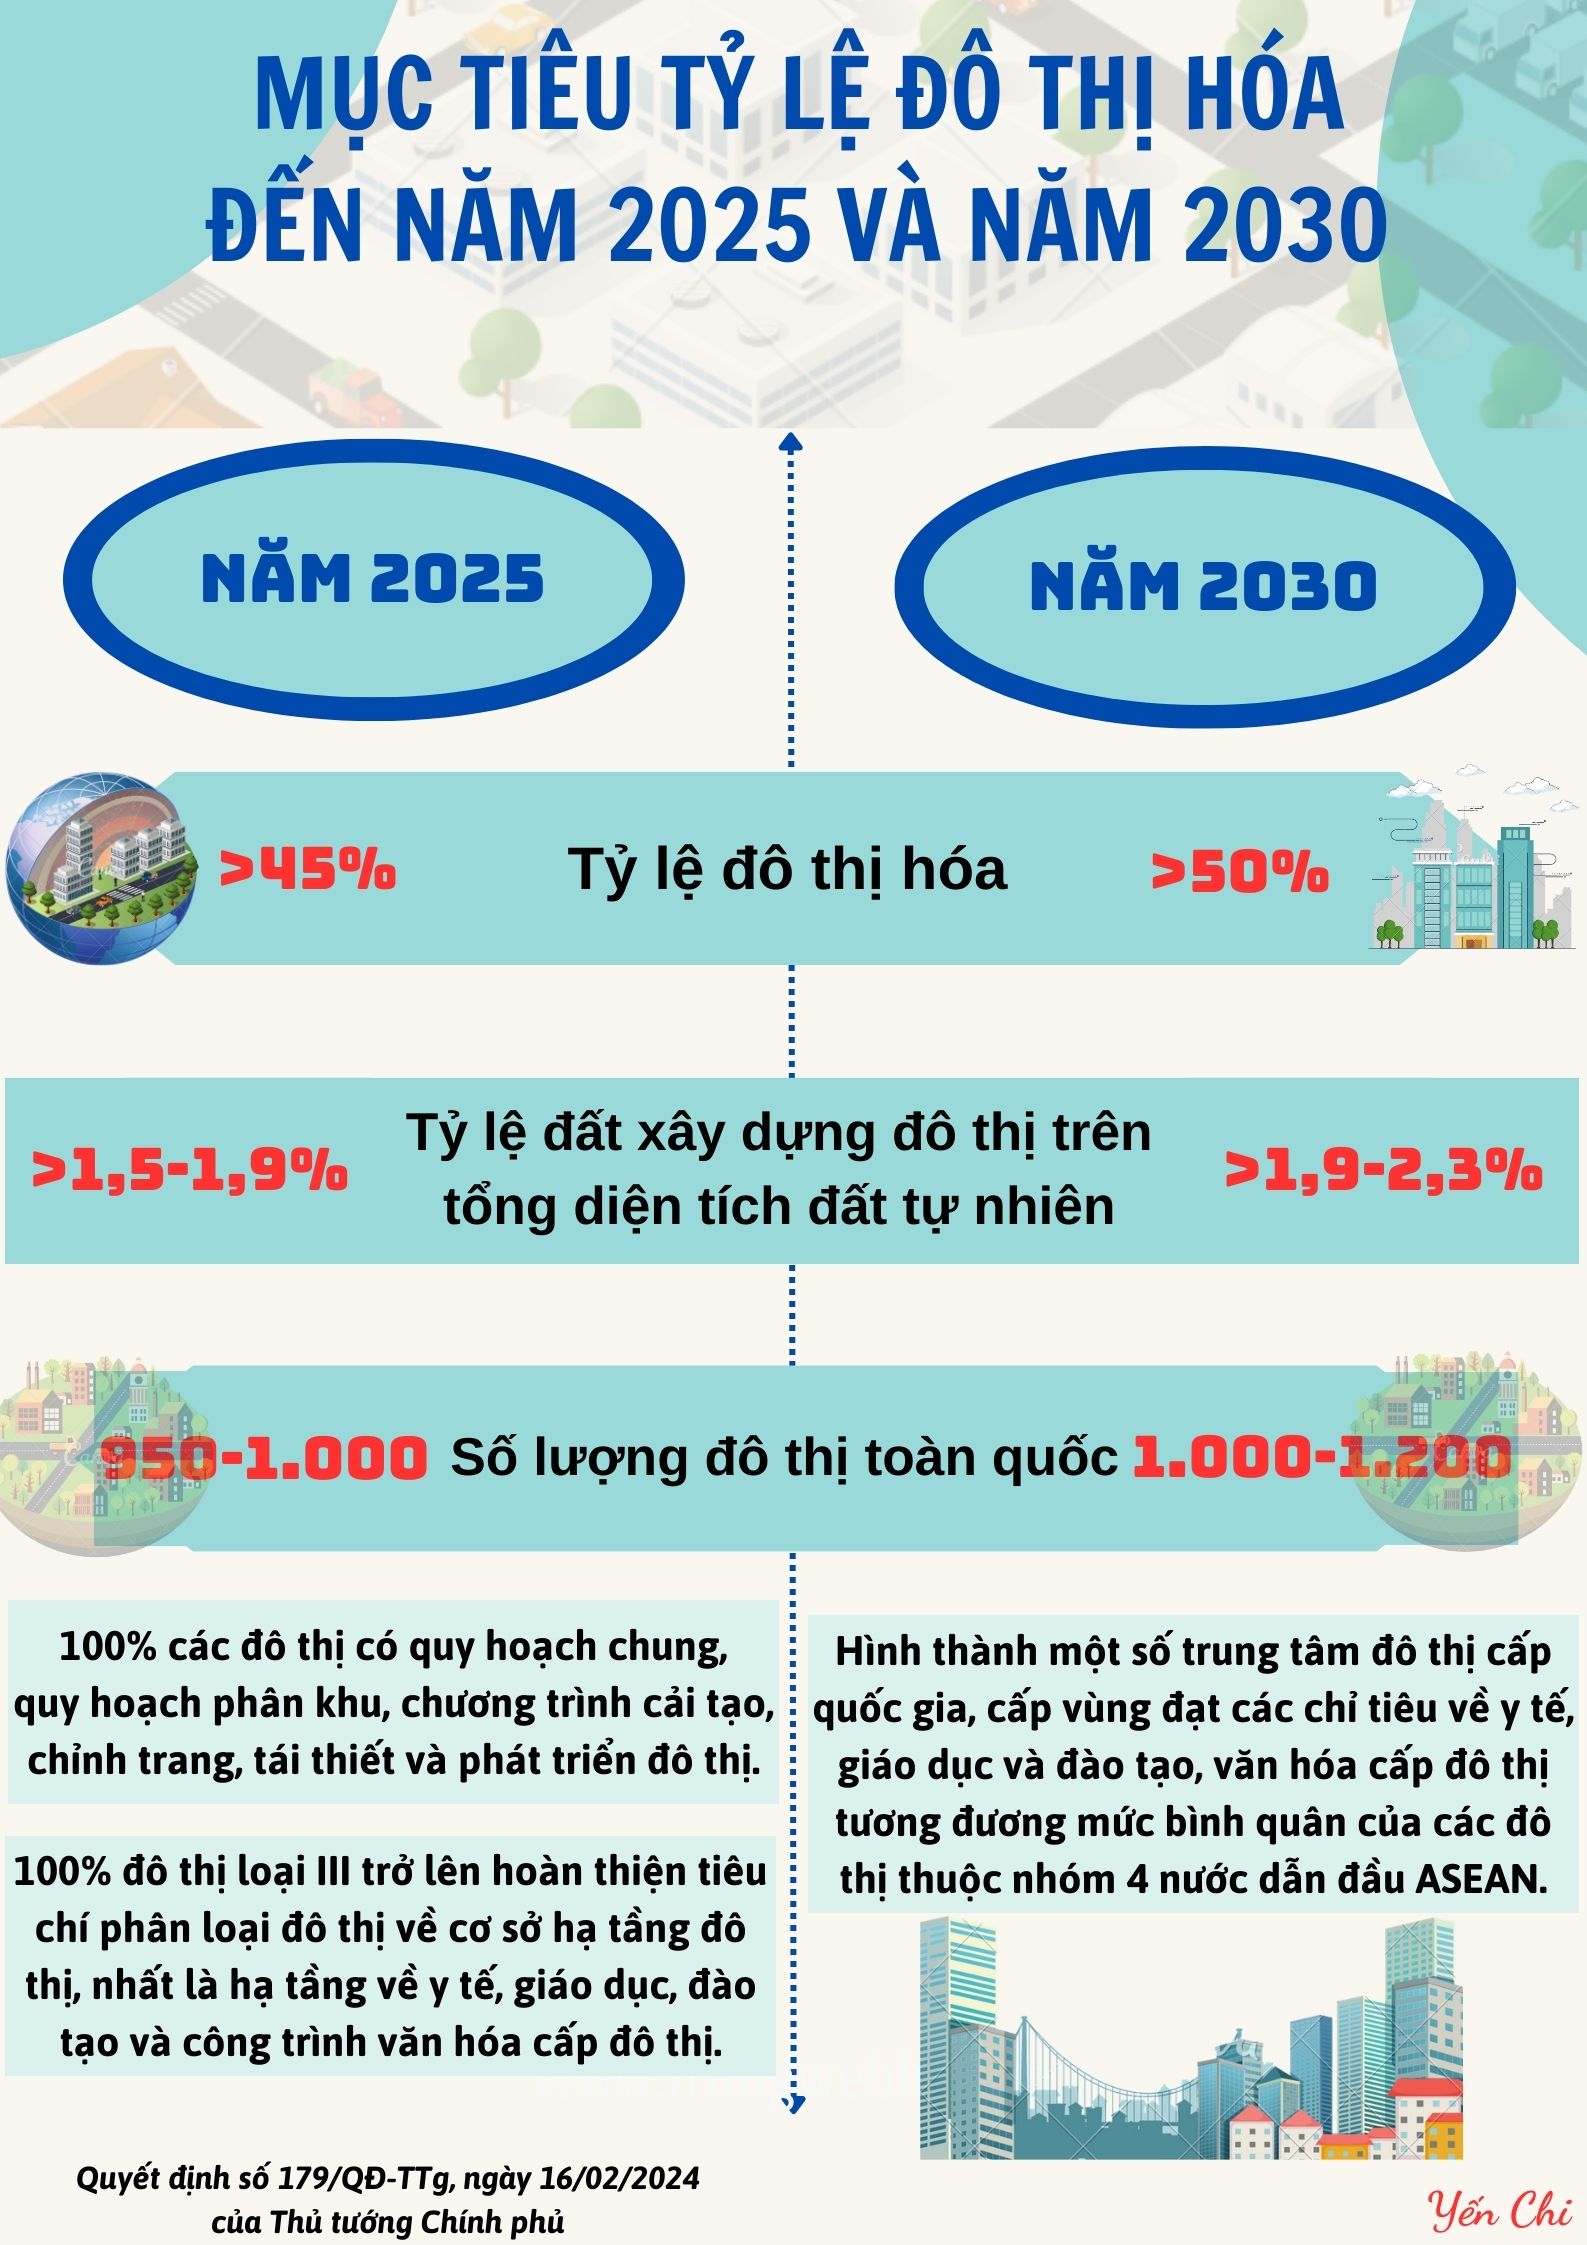 Mục tiêu tỷ lệ đô thị hóa đến năm 2025 và 2030